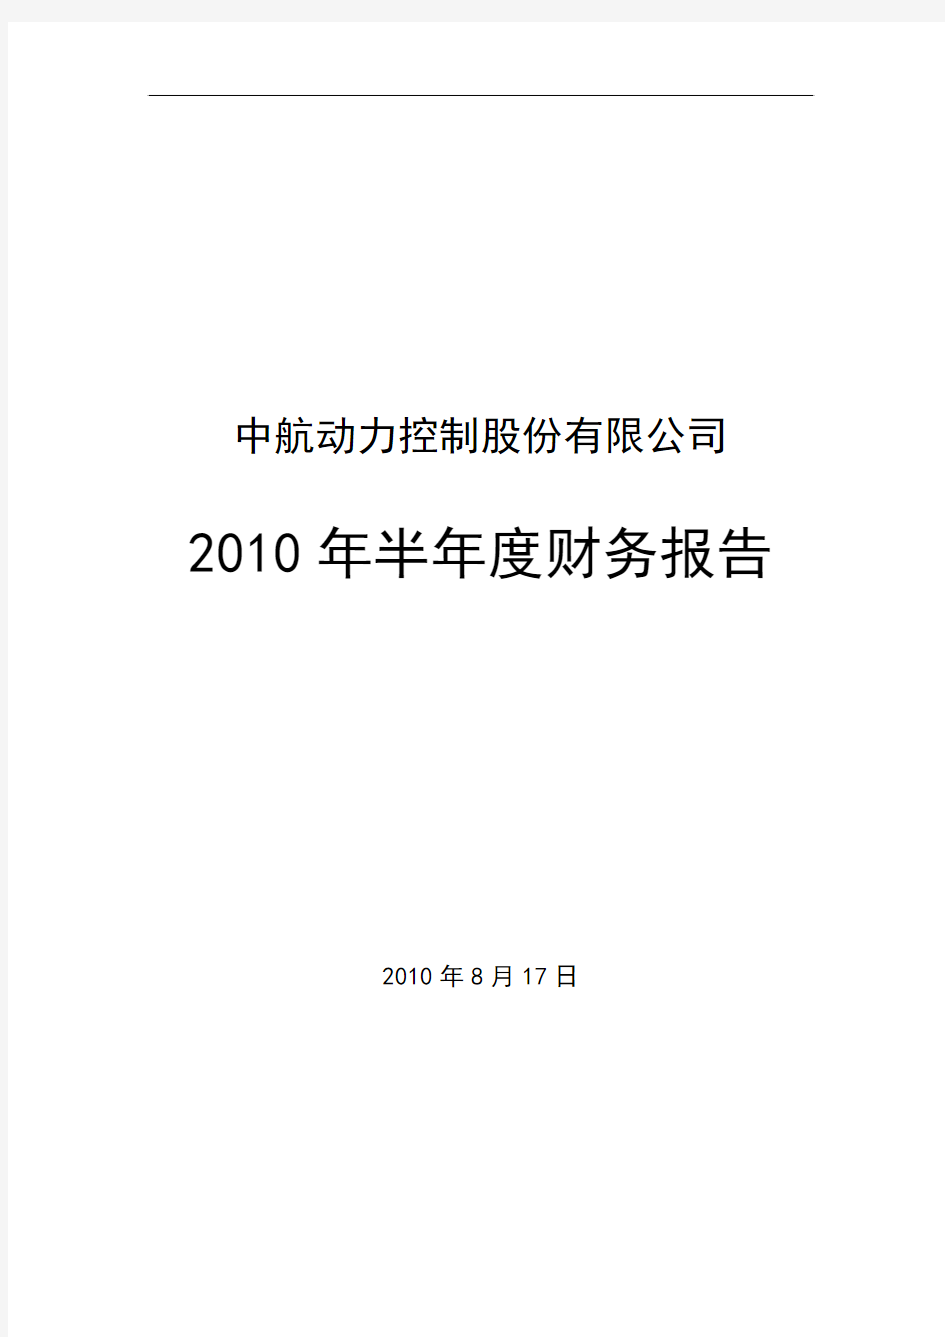 ST宇航：2010年半年度财务报告 2010-08-19